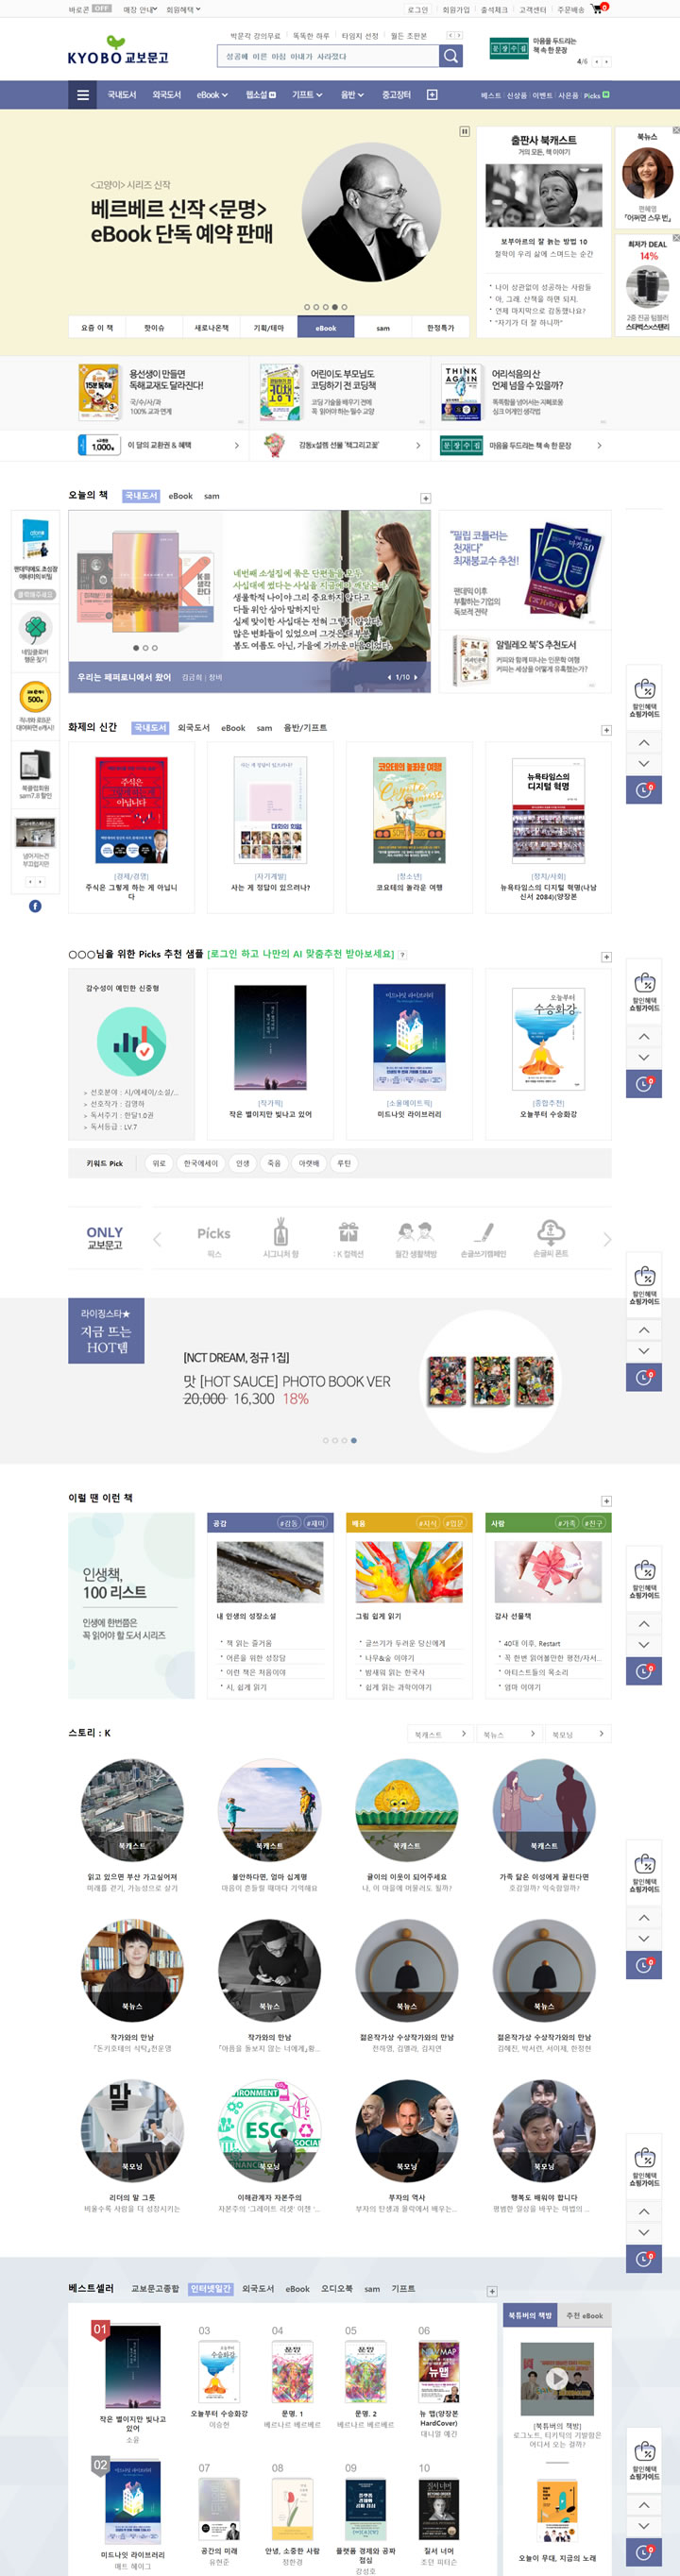 韓國最大的書店連鎖店：Kyobo教保文庫 韓國購物網站 MeetKK-MeetKK